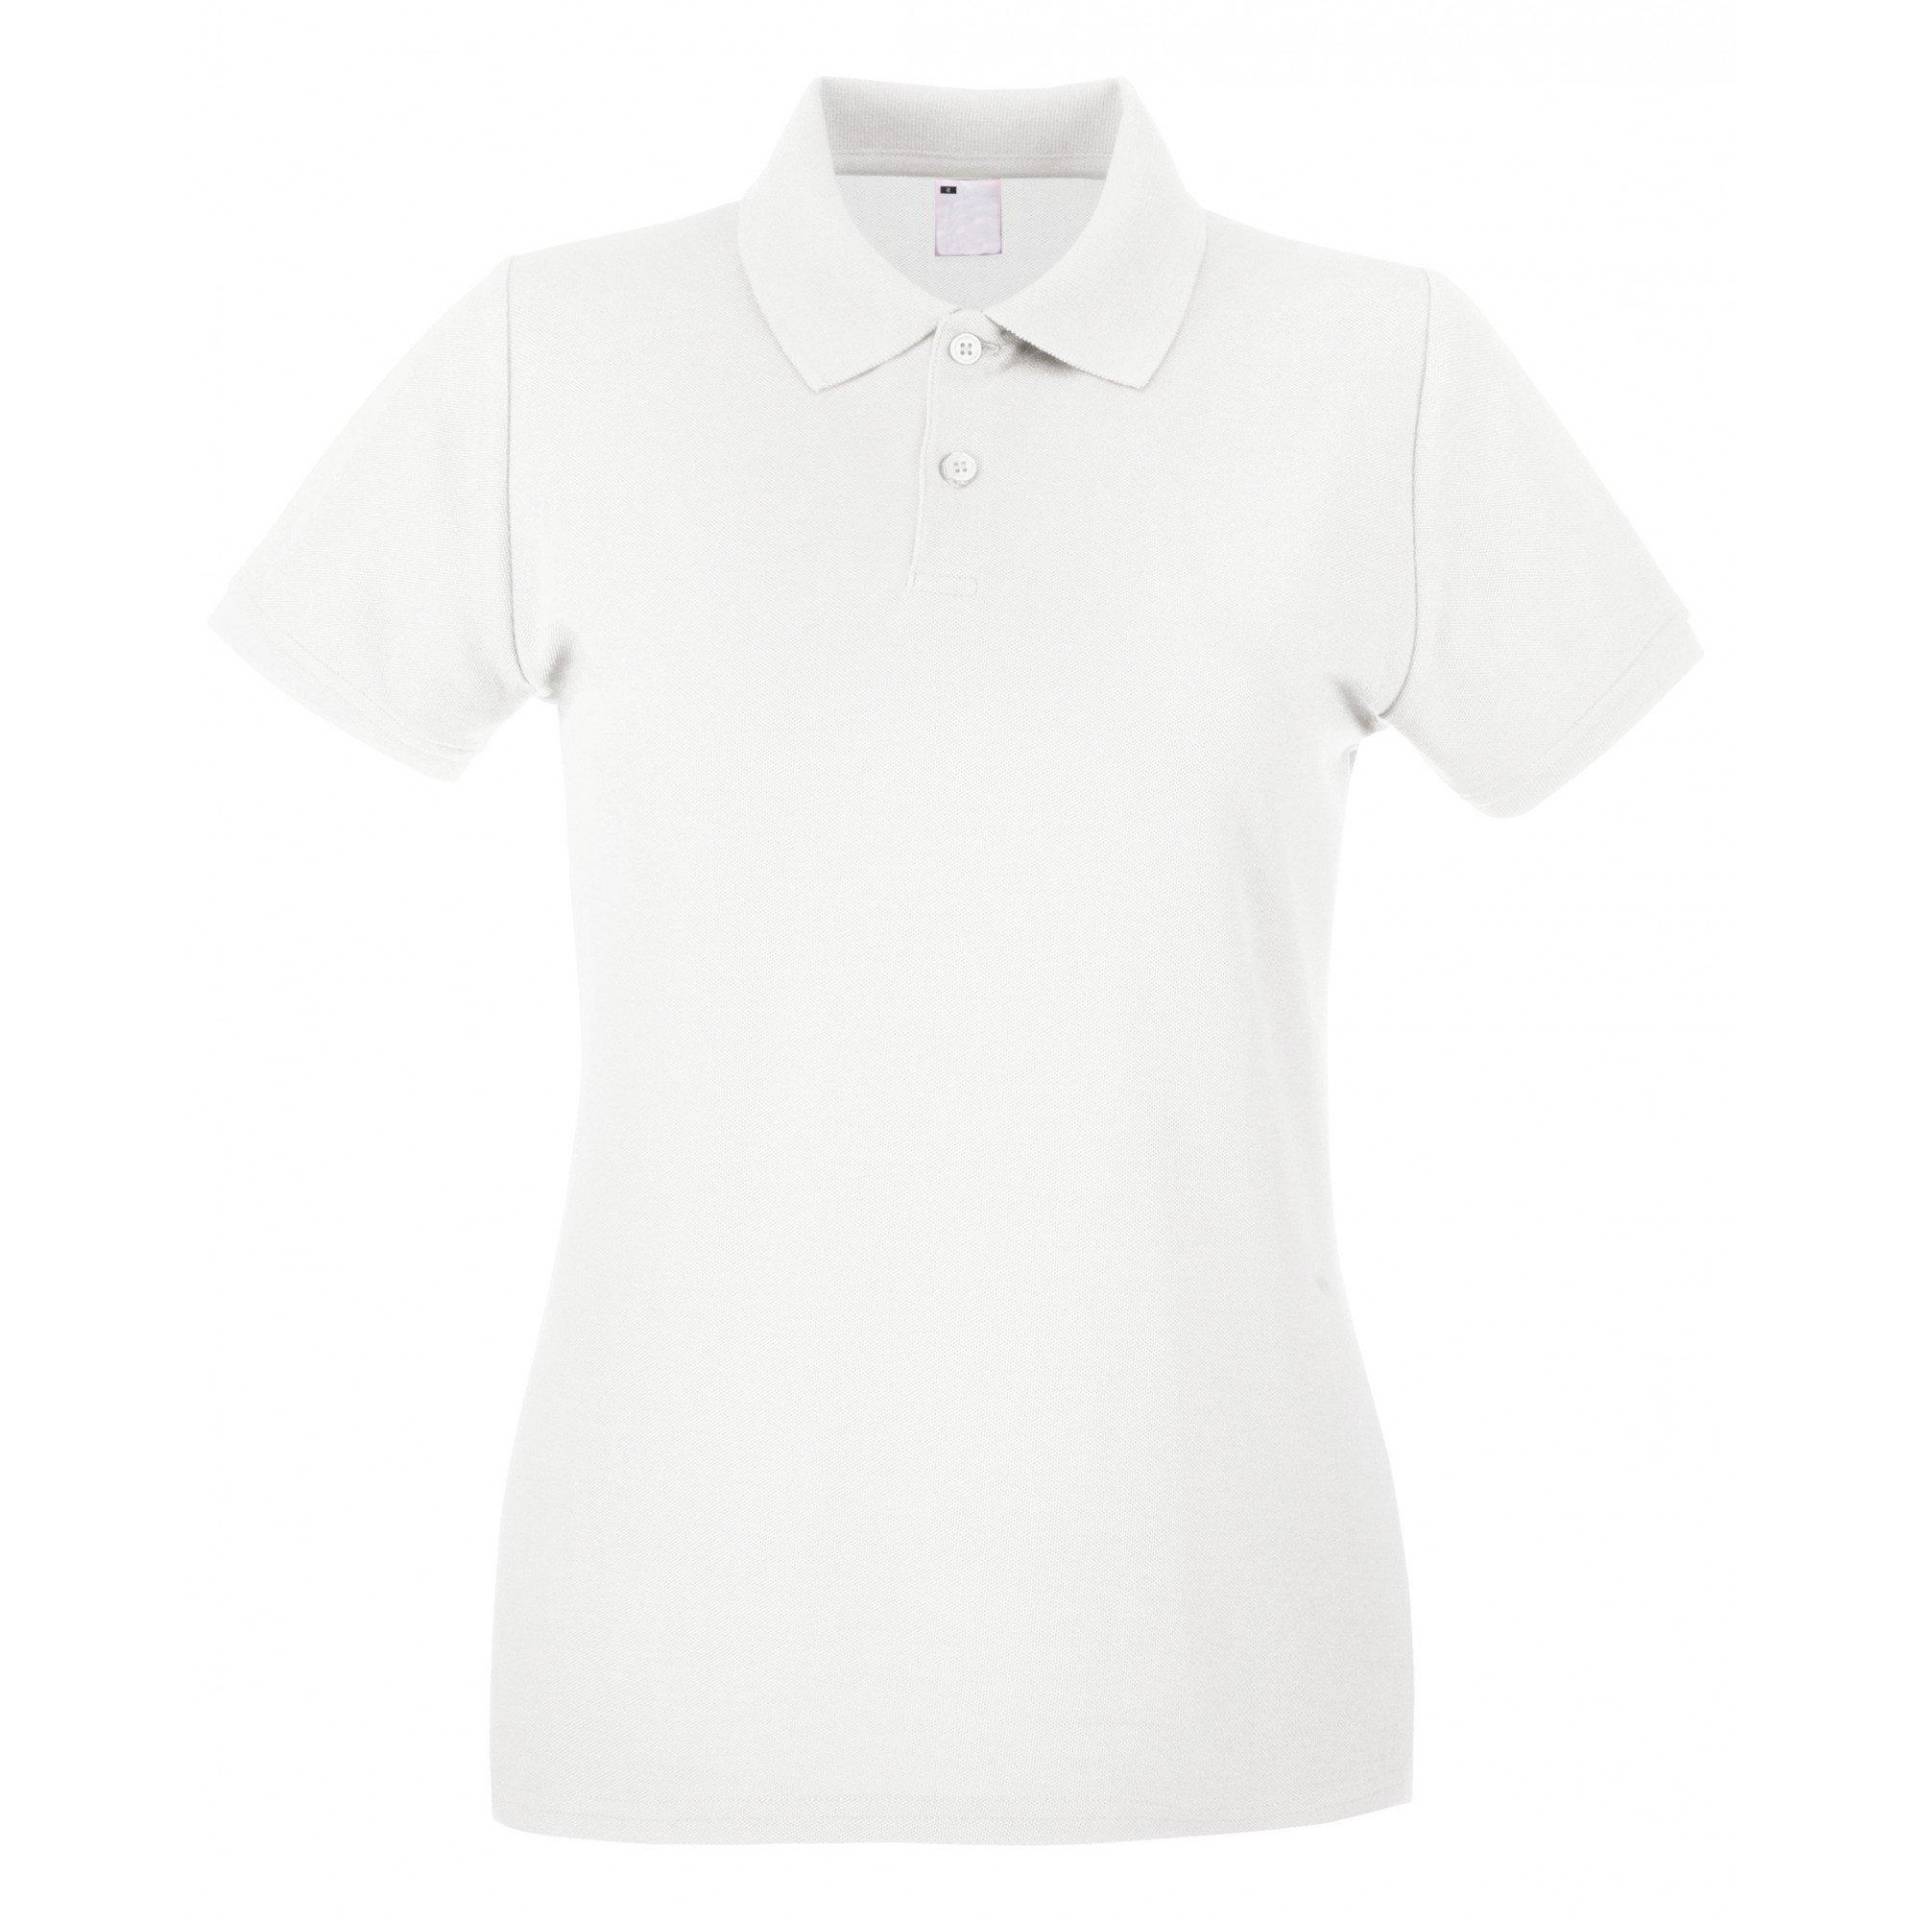 Poloshirt, Figurbetont, Kurzärmlig Damen Weiss L von Universal Textiles